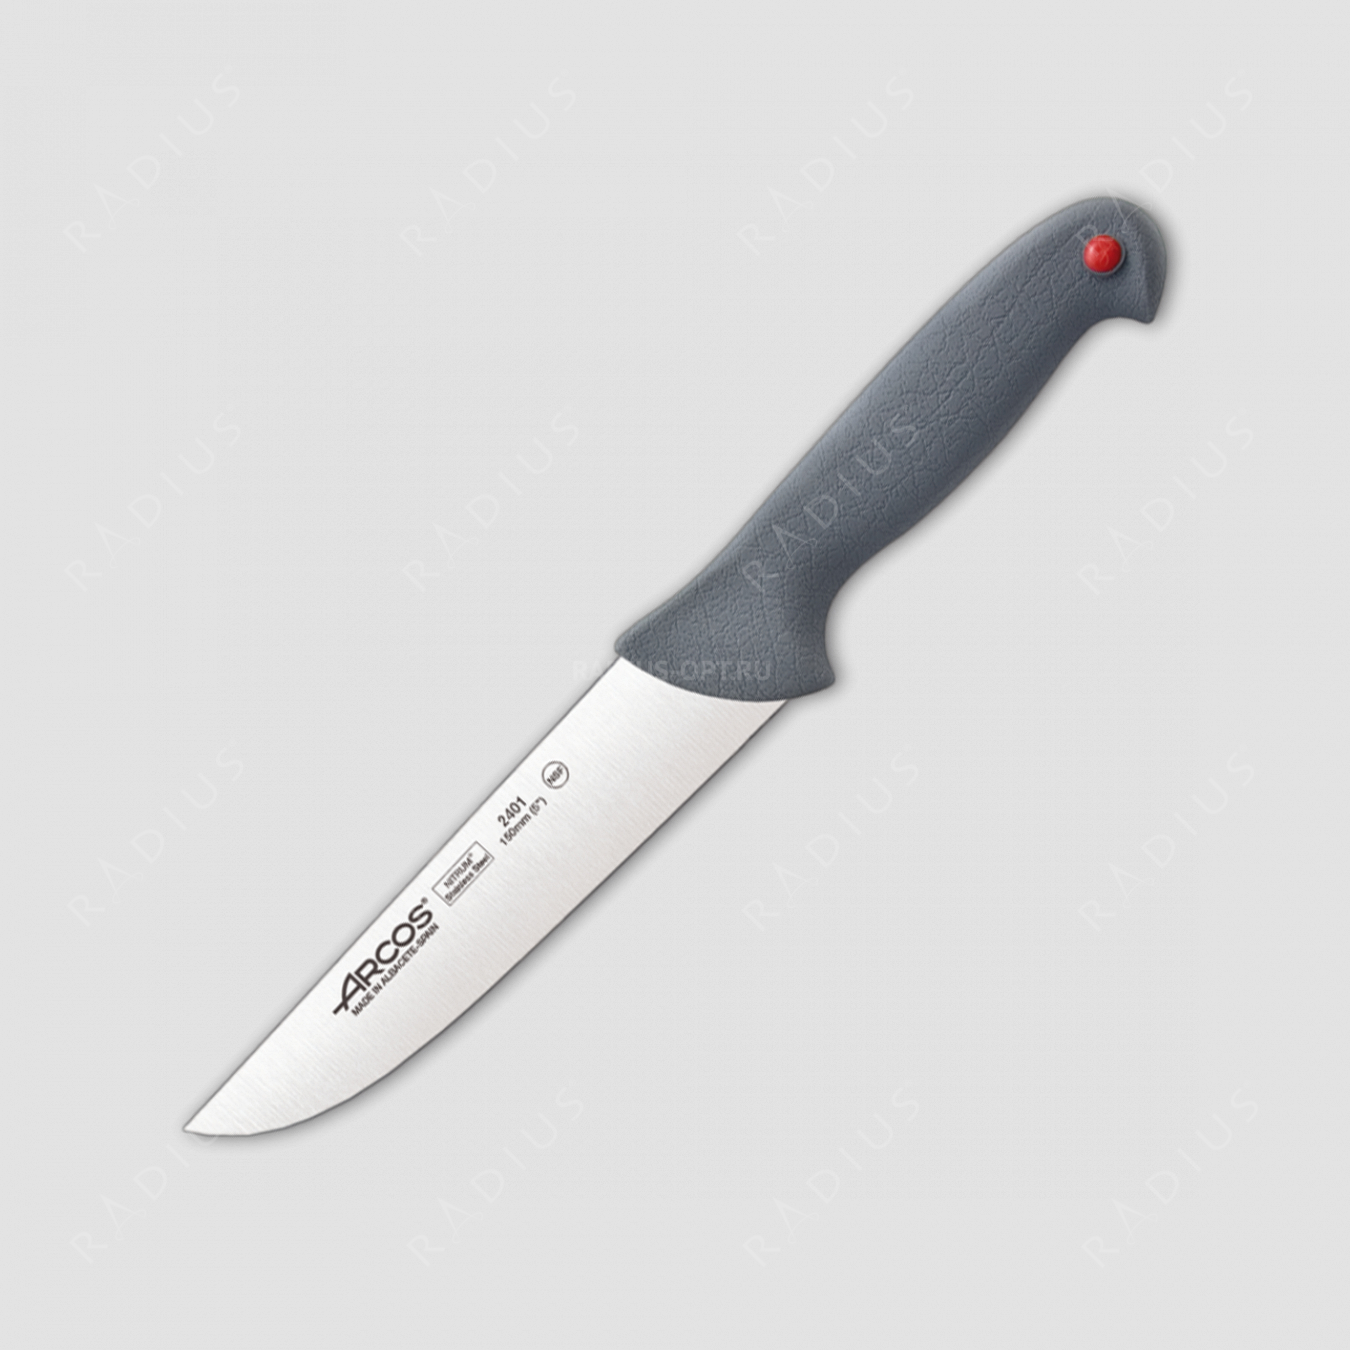 Нож кухонный разделочный 15 см, серия Colour-prof, ARCOS, Испания